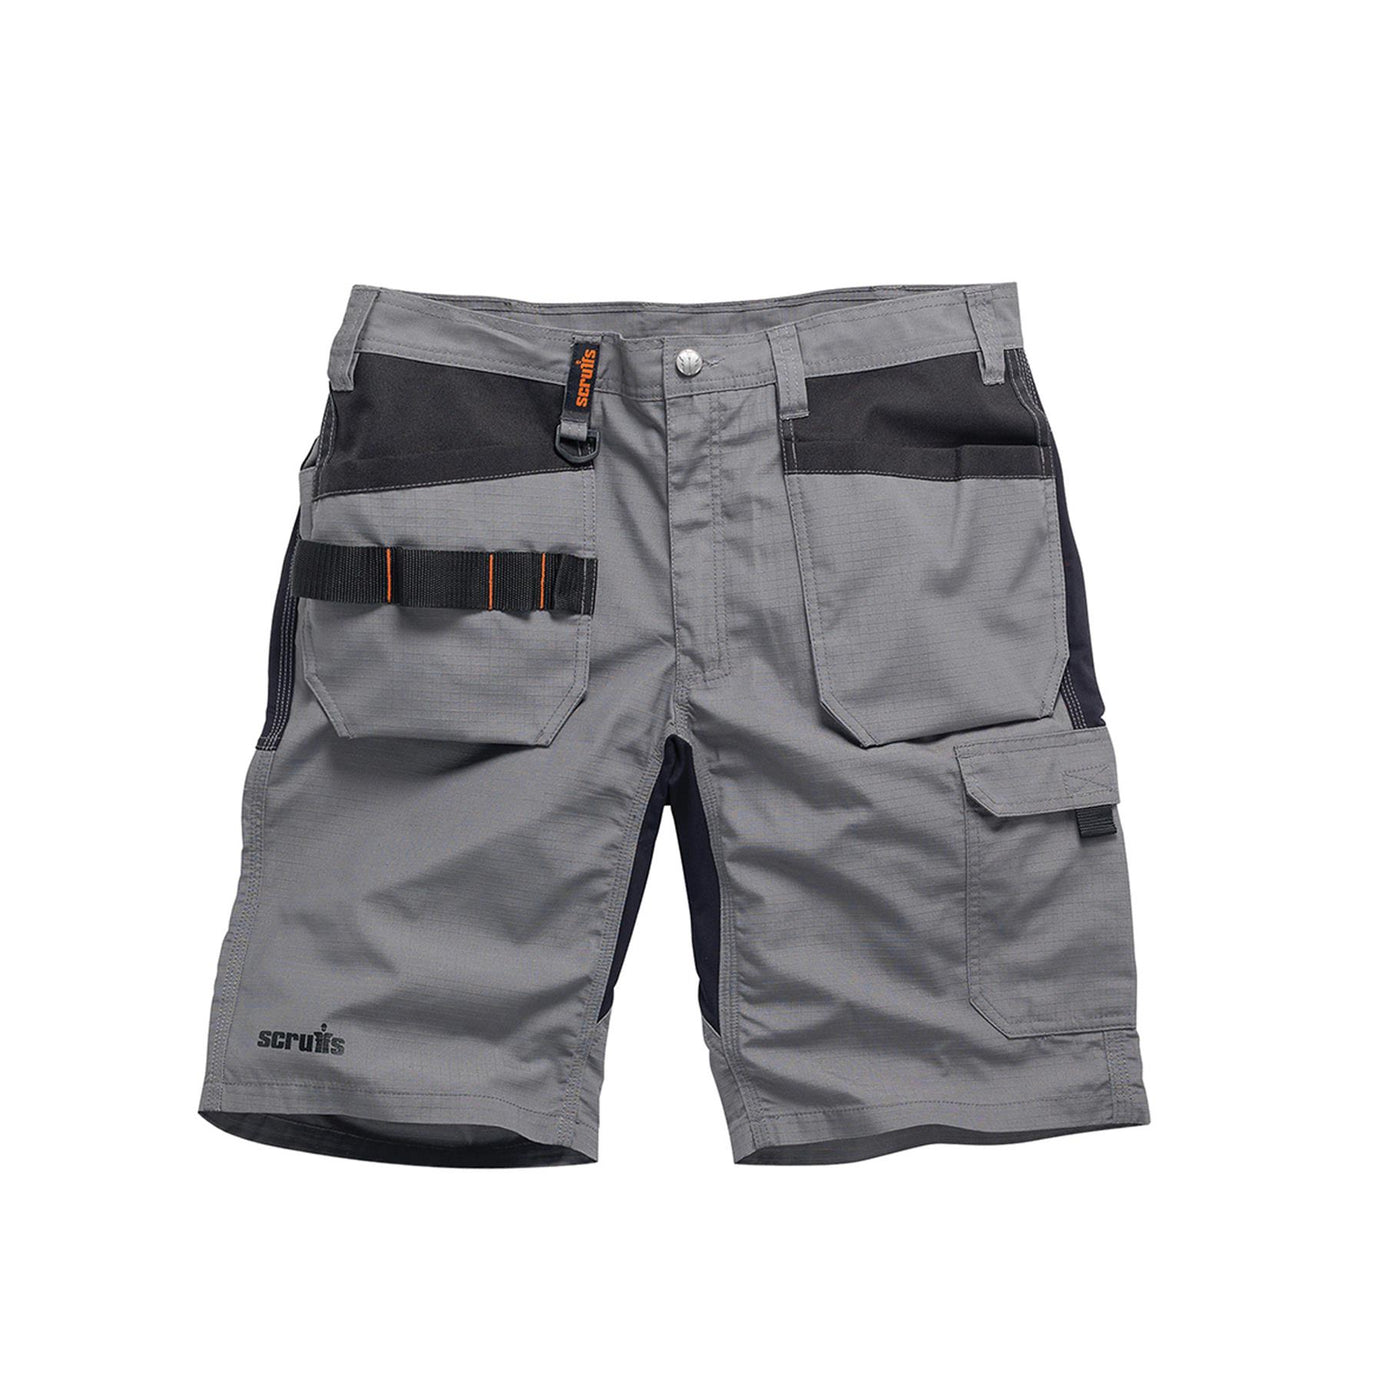 Scruffs Flex Holster Shorts Cargo Combat Pockets Hard Wearing Graphite 36 Waist